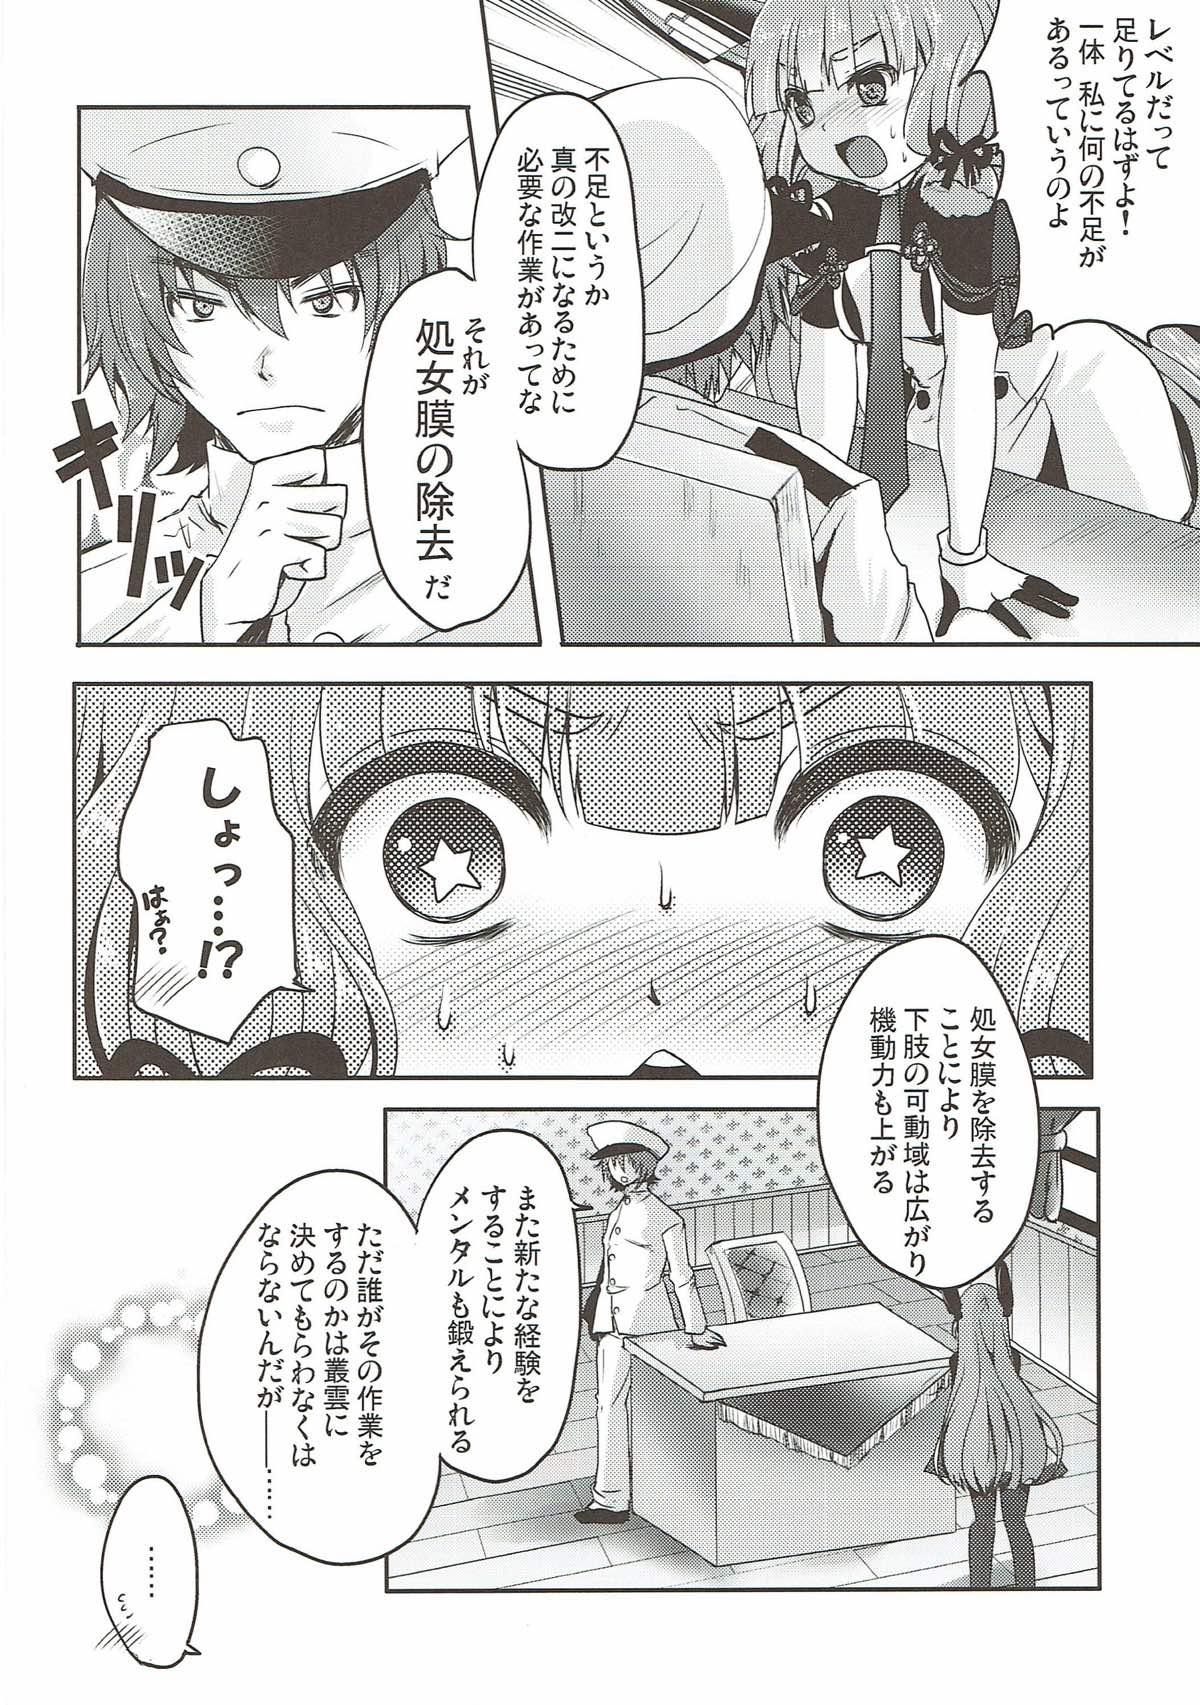 Model Murakumo, Otona ni Naru. - Kantai collection Bigass - Page 3